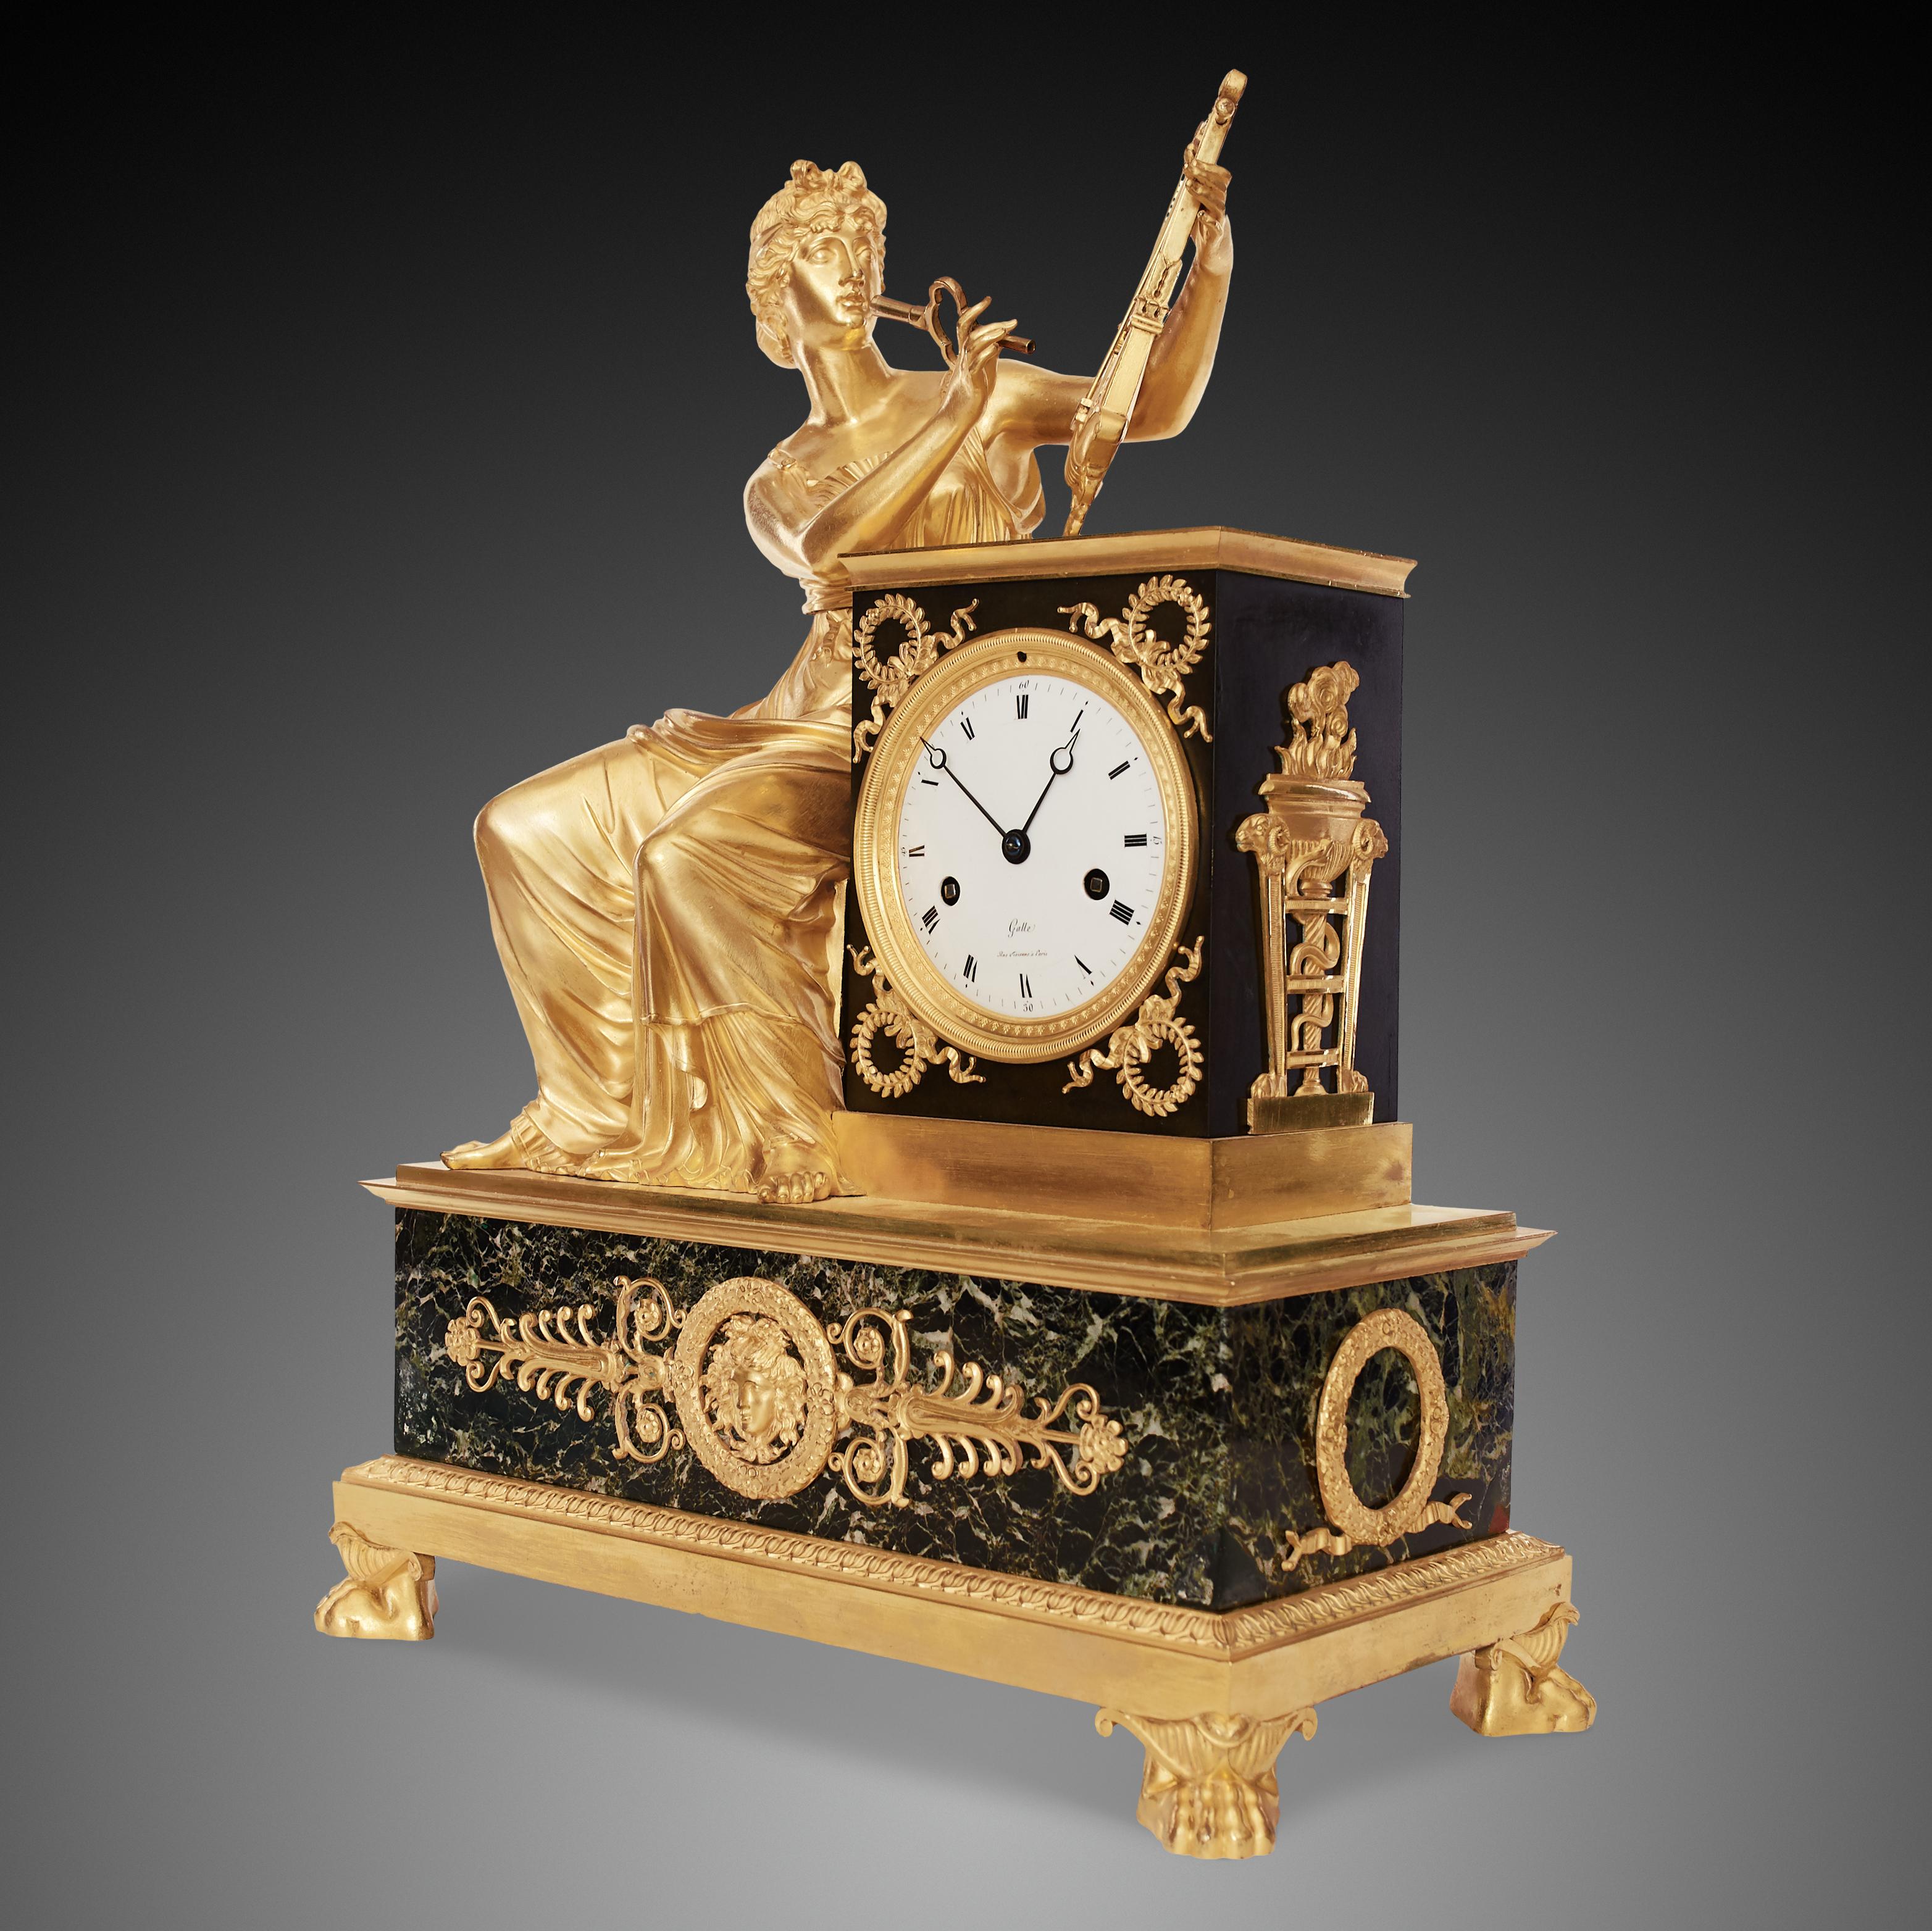 Dies ist eine schöne antike Französisch Empire Mantel Uhr wurde aus vergoldeter Bronze und Marmor gemacht. Die Uhr steht auf einem rechteckigen Marmorsockel mit vier Beinen in Form eines Löwenfußes. Das weiße Emailzifferblatt ist mit 